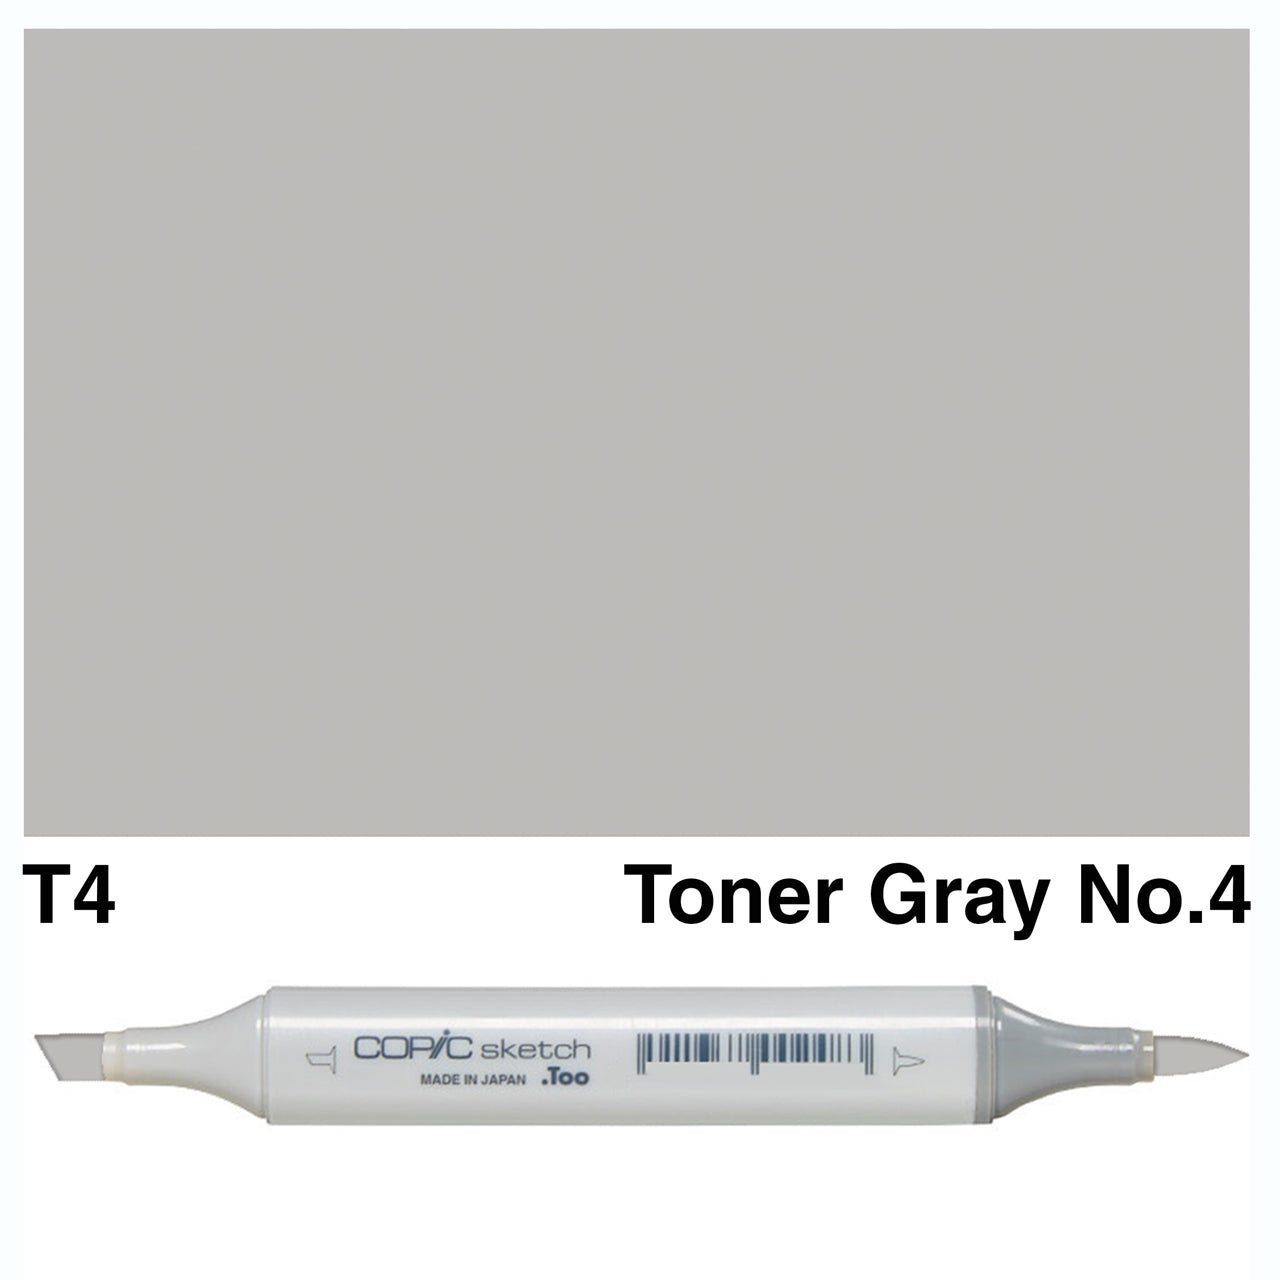 Copic Sketch T4 Toner Gray No.4 - theartshop.com.au